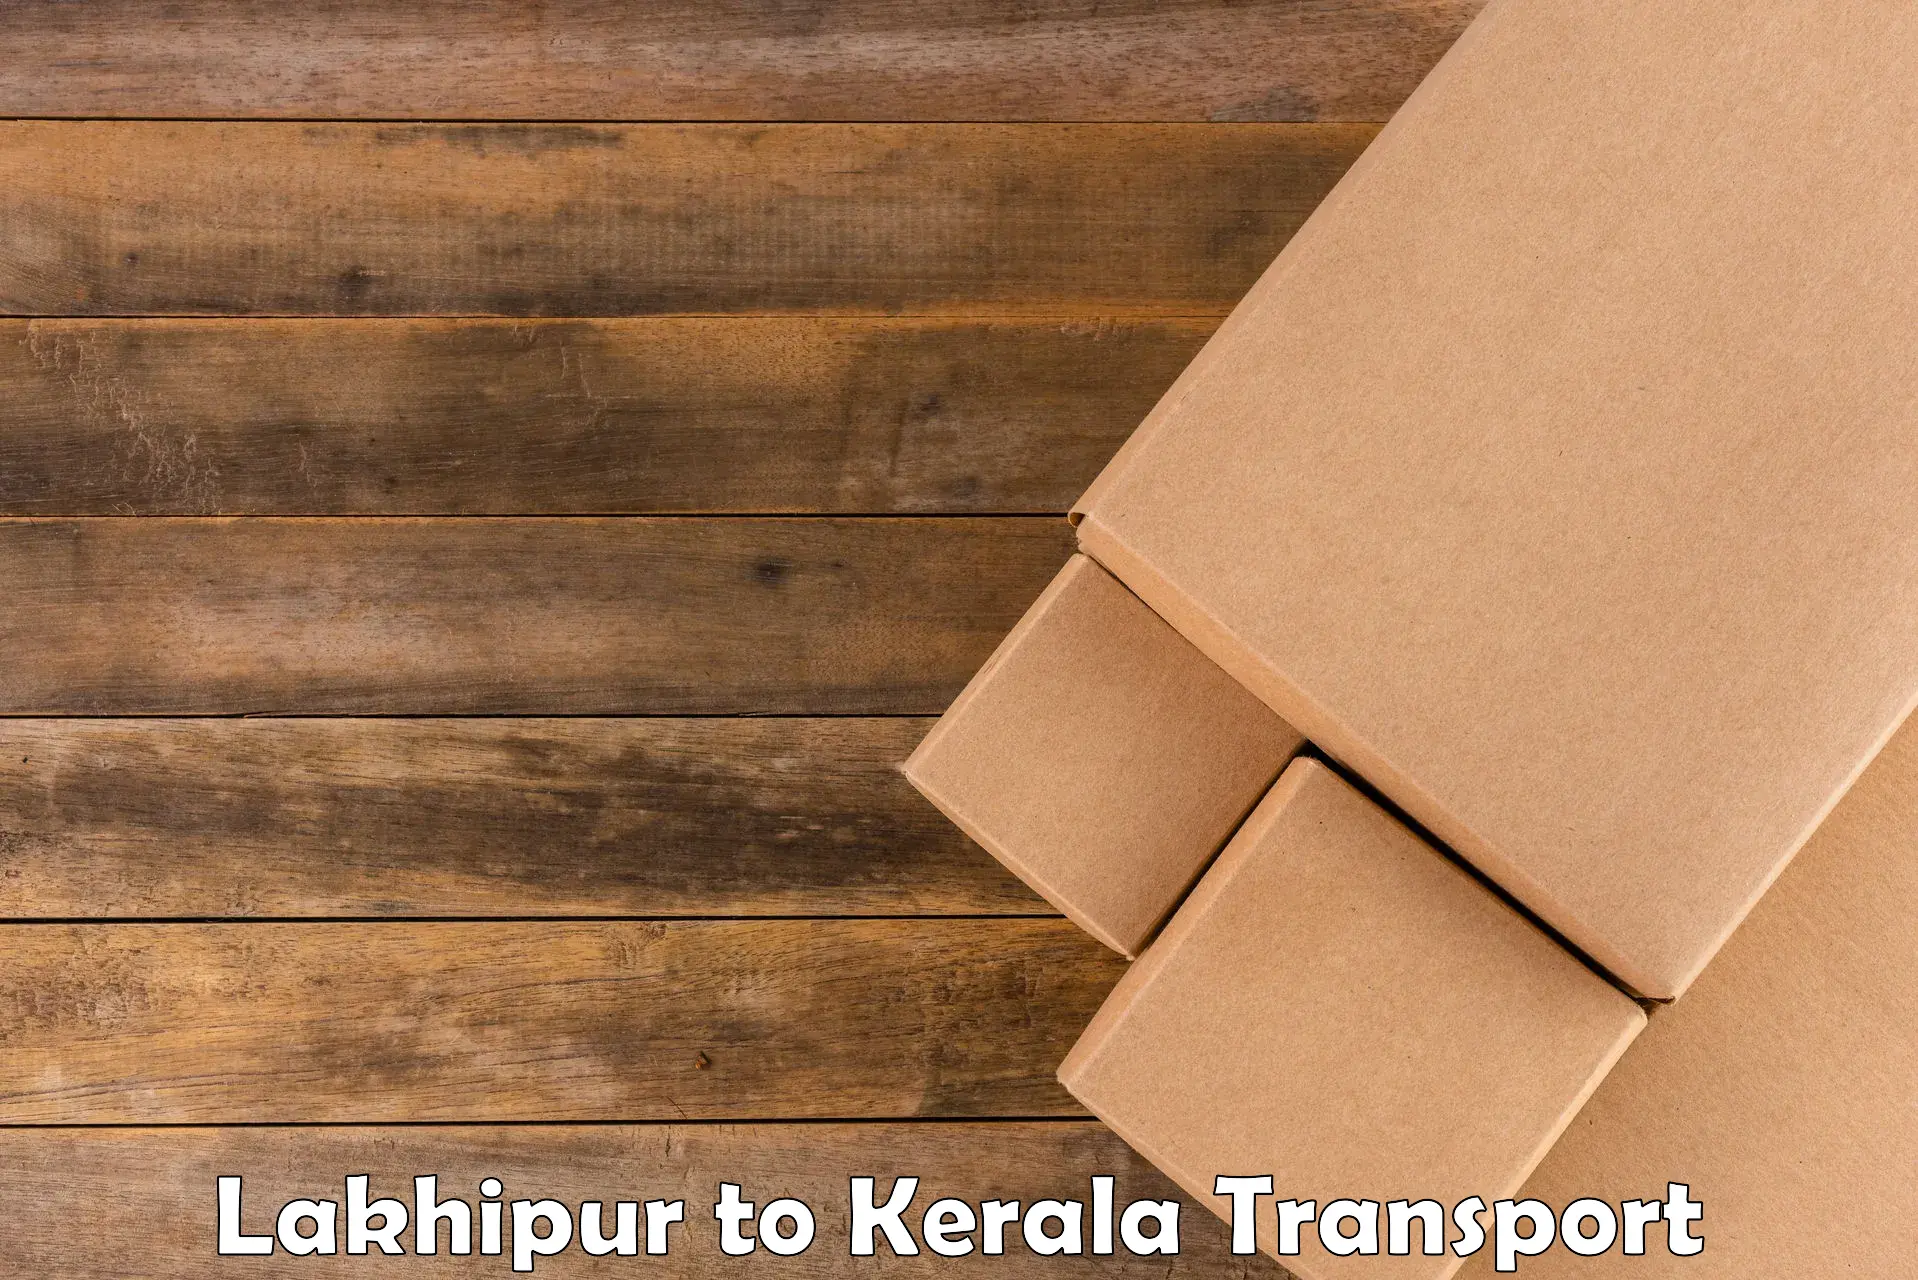 Furniture transport service Lakhipur to Kallachi